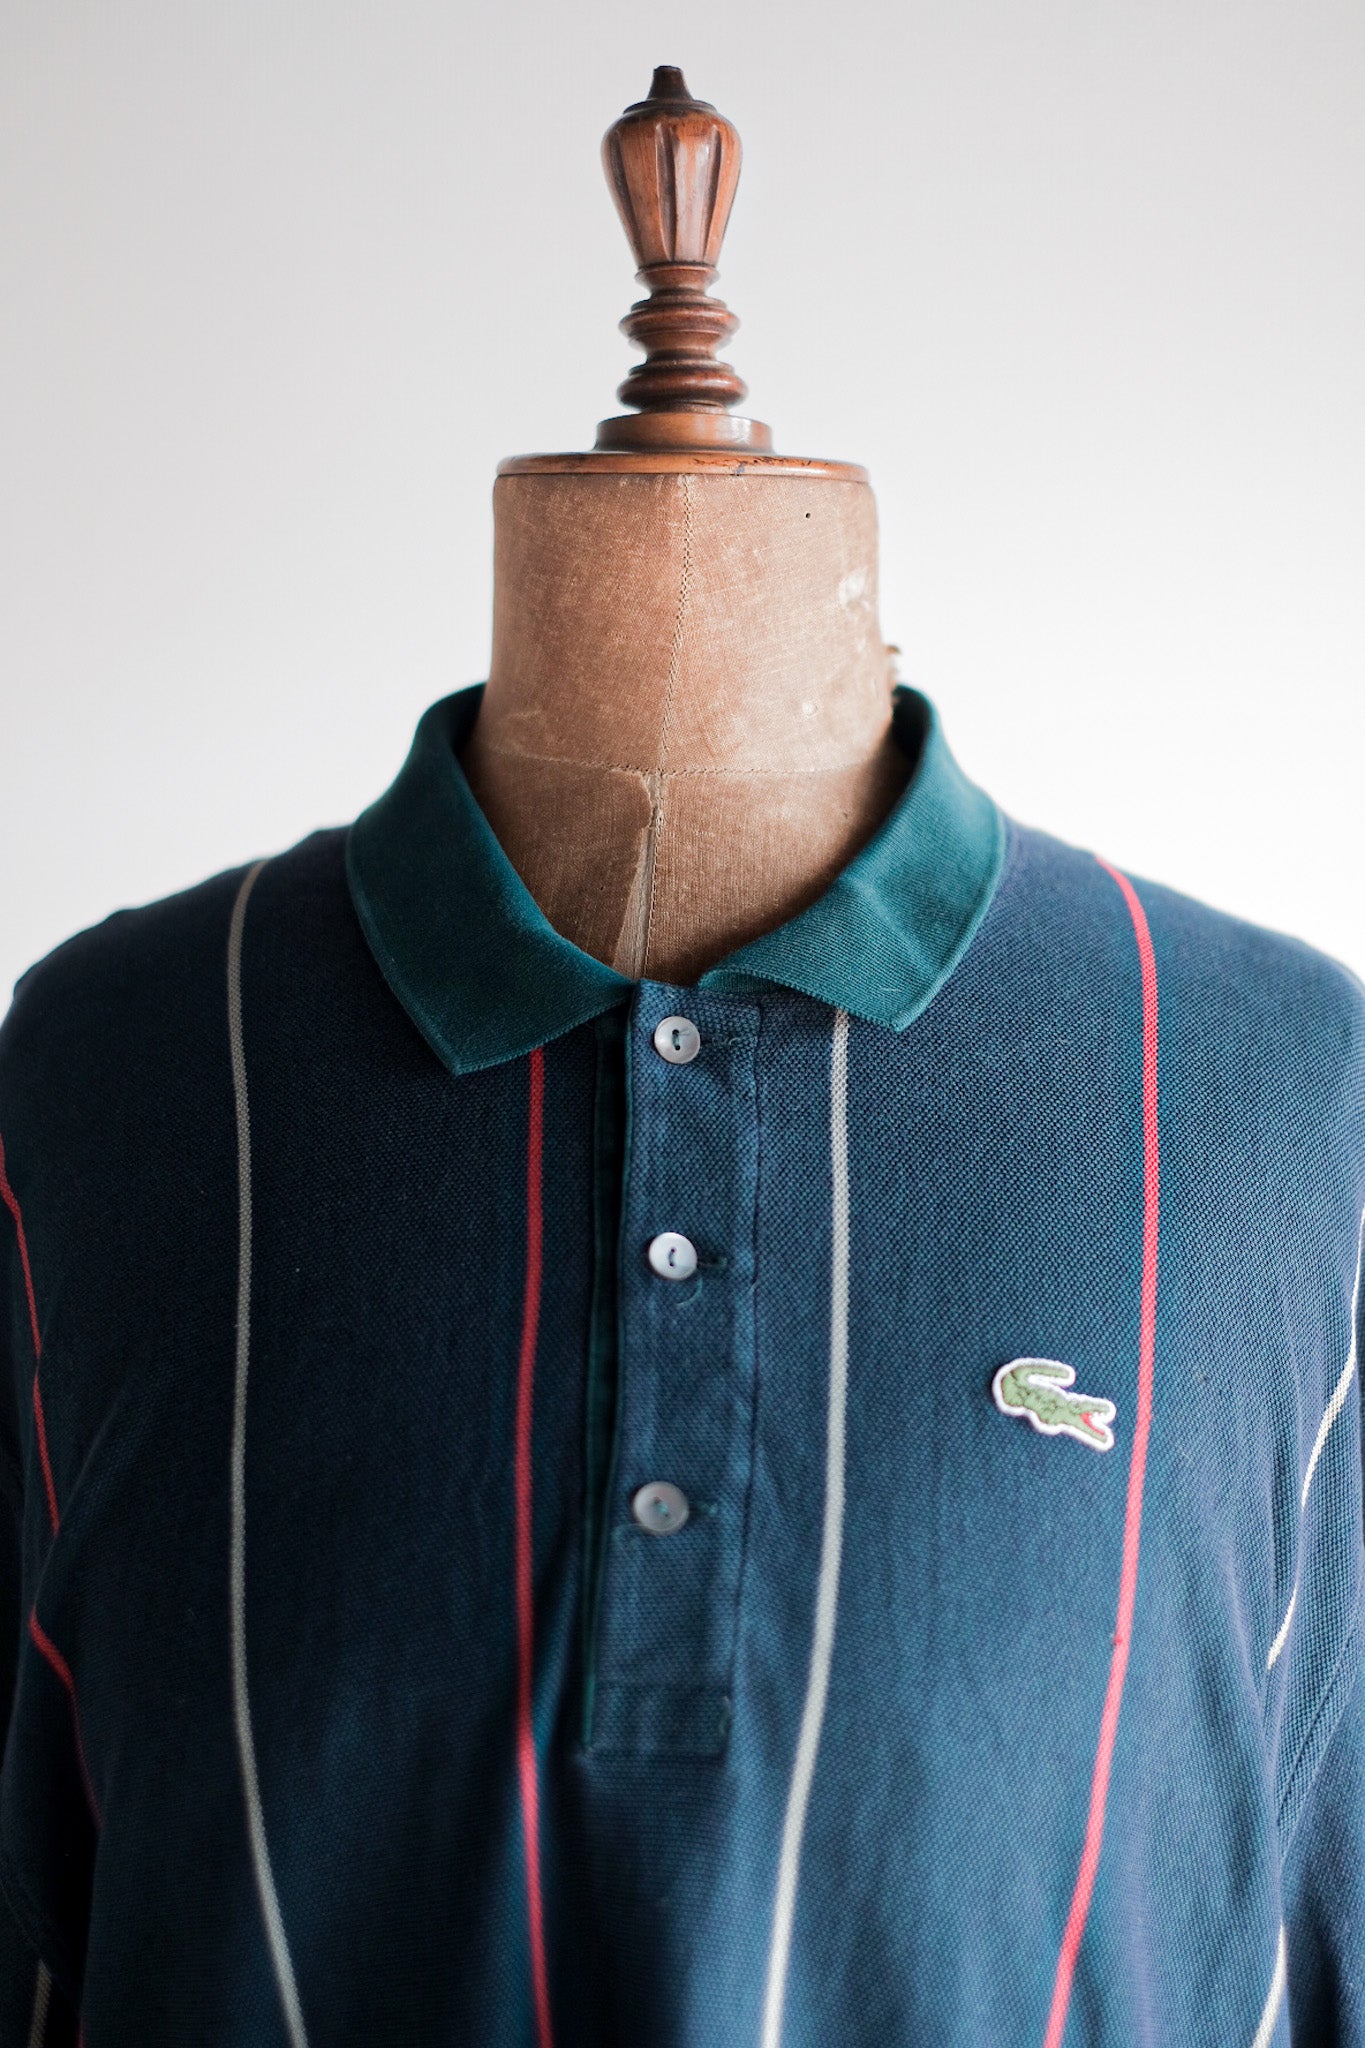 [〜80年代]顏色的lacoste s/s polo襯衫尺寸。8“多色”